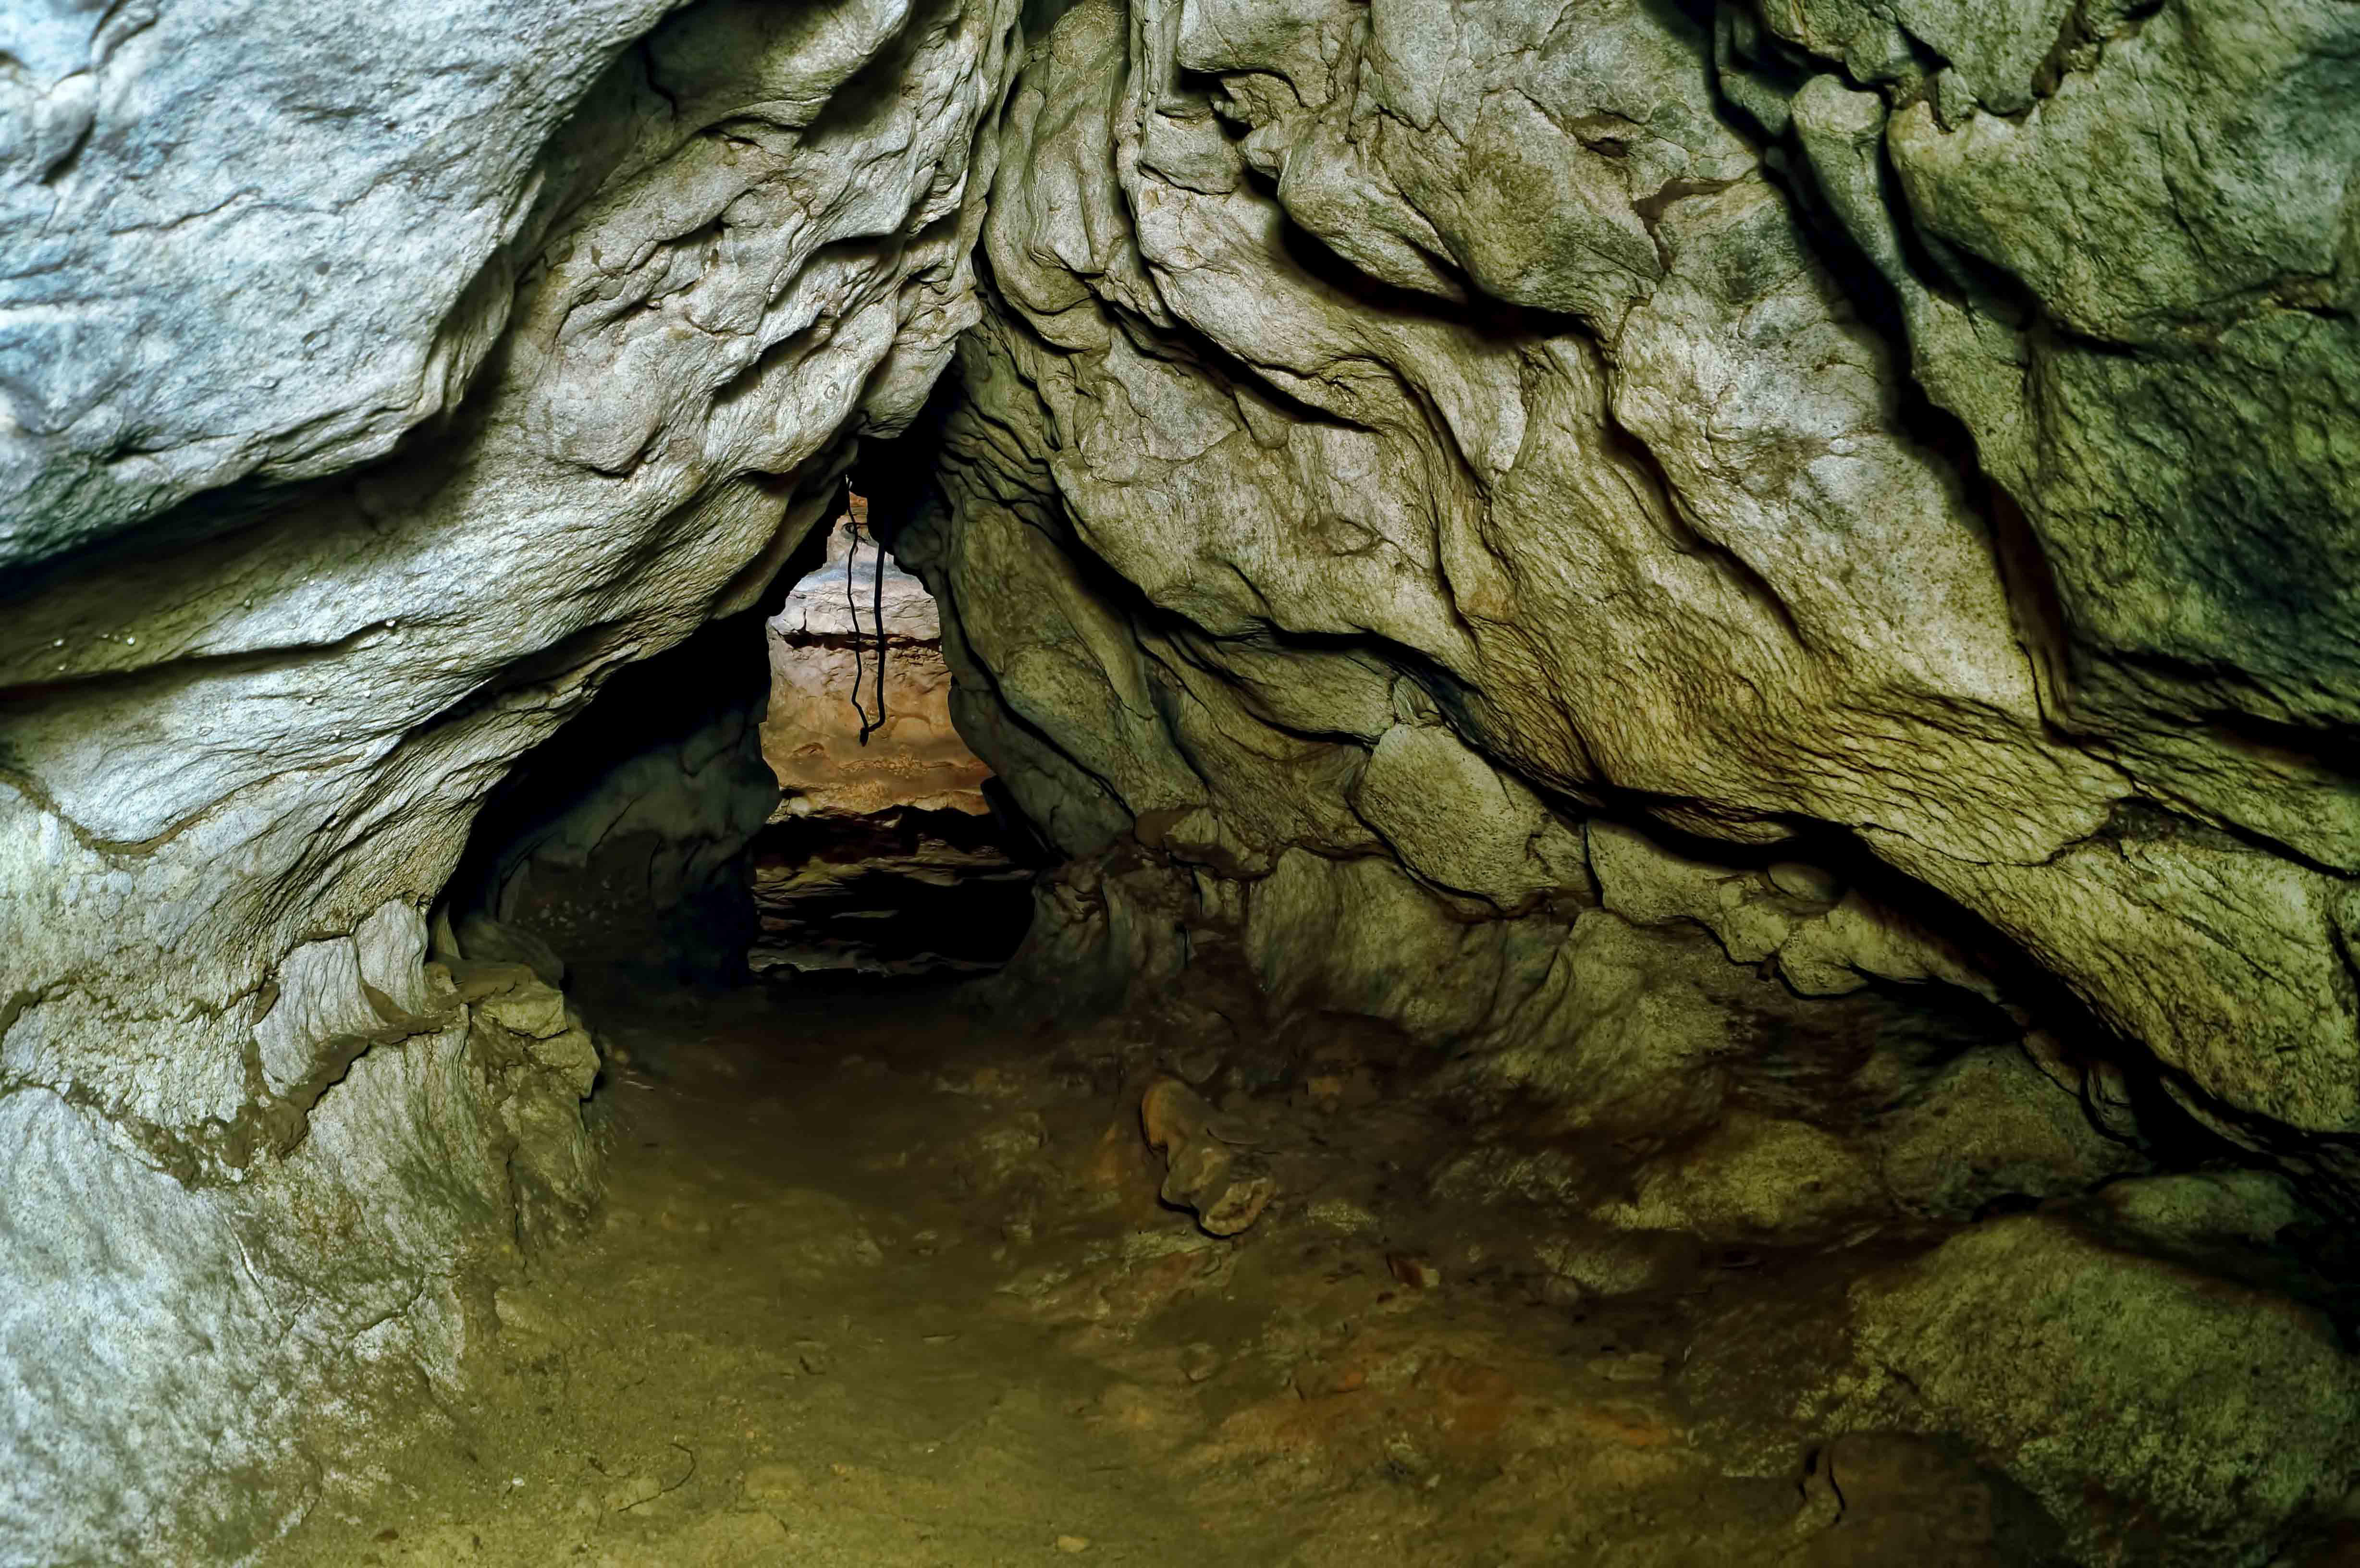 Arwah Caves